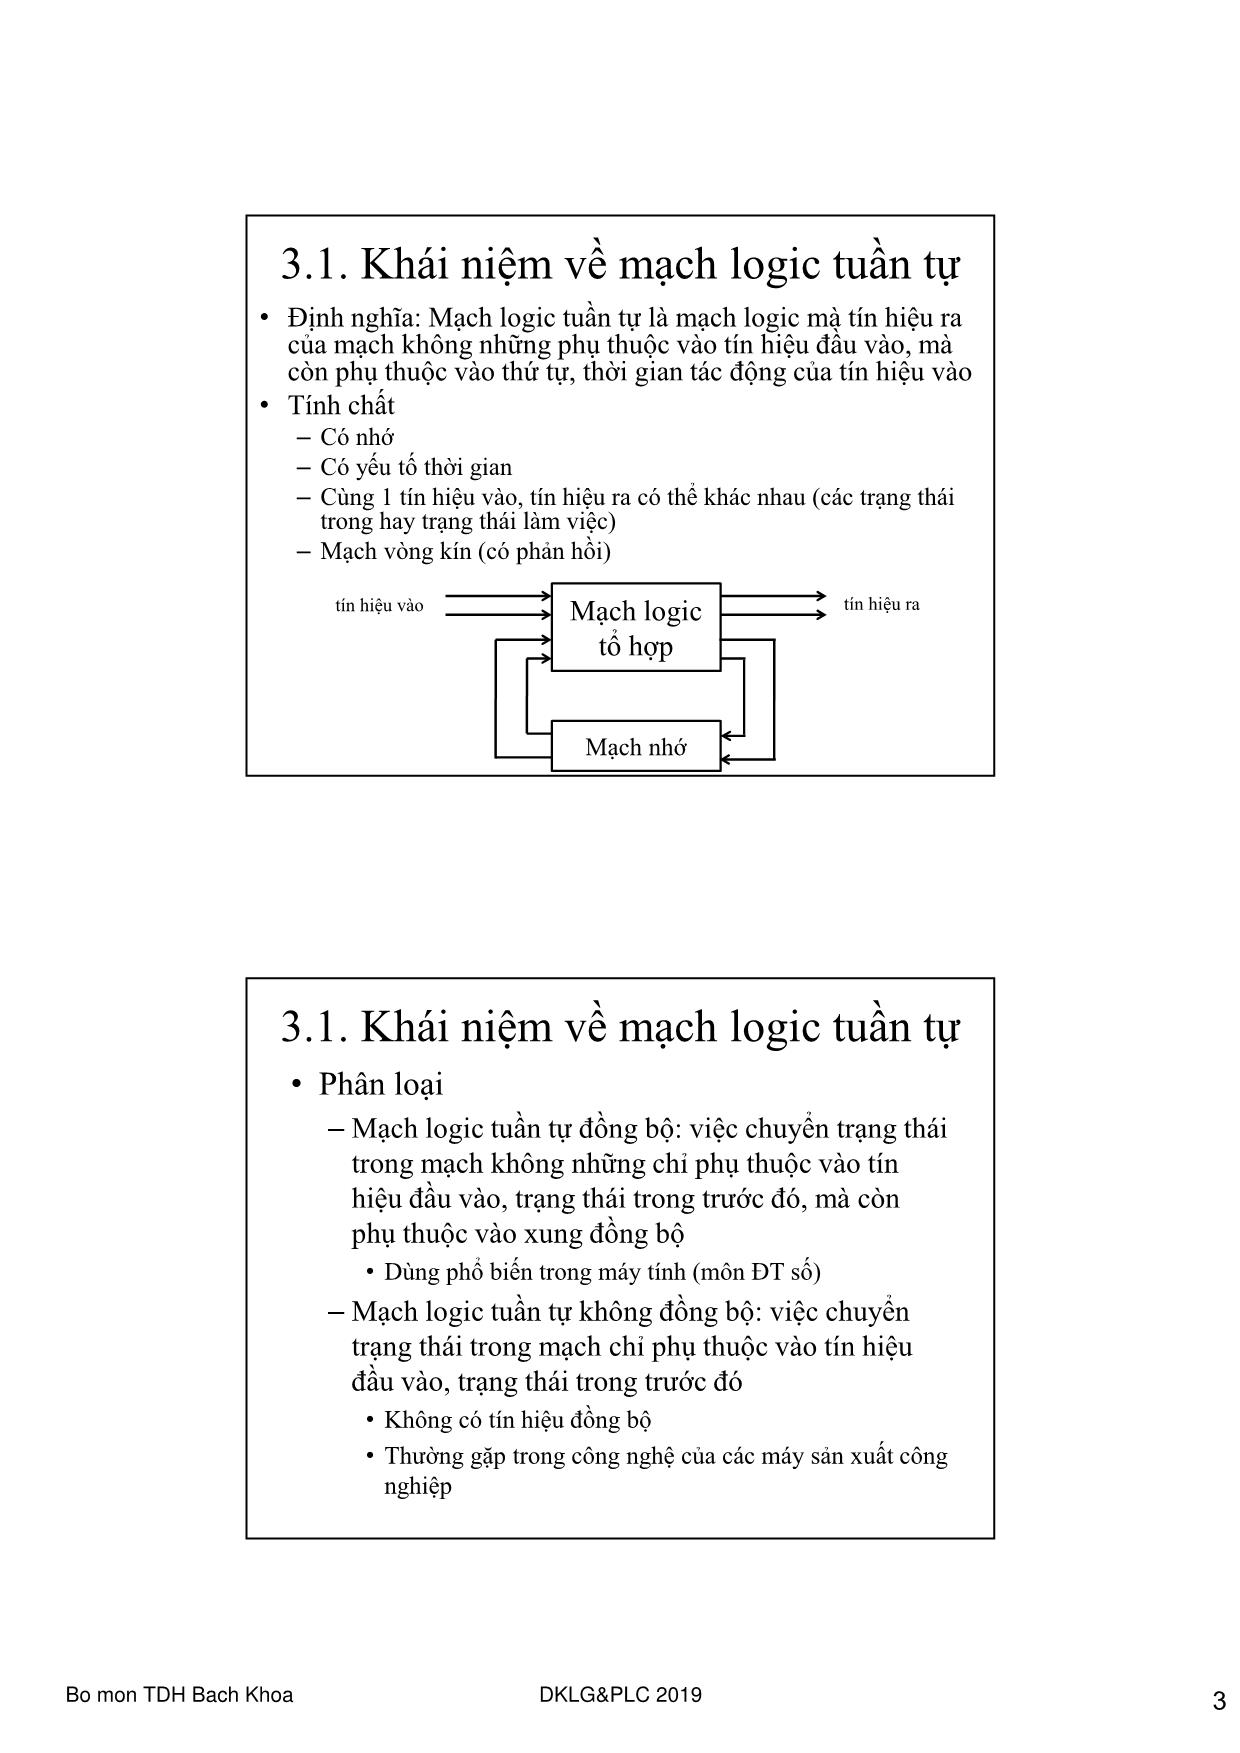 Bài giảng Điều khiển Logic và PLC - Chương 3: Tổng hợp mạch logic tuần tự trang 3